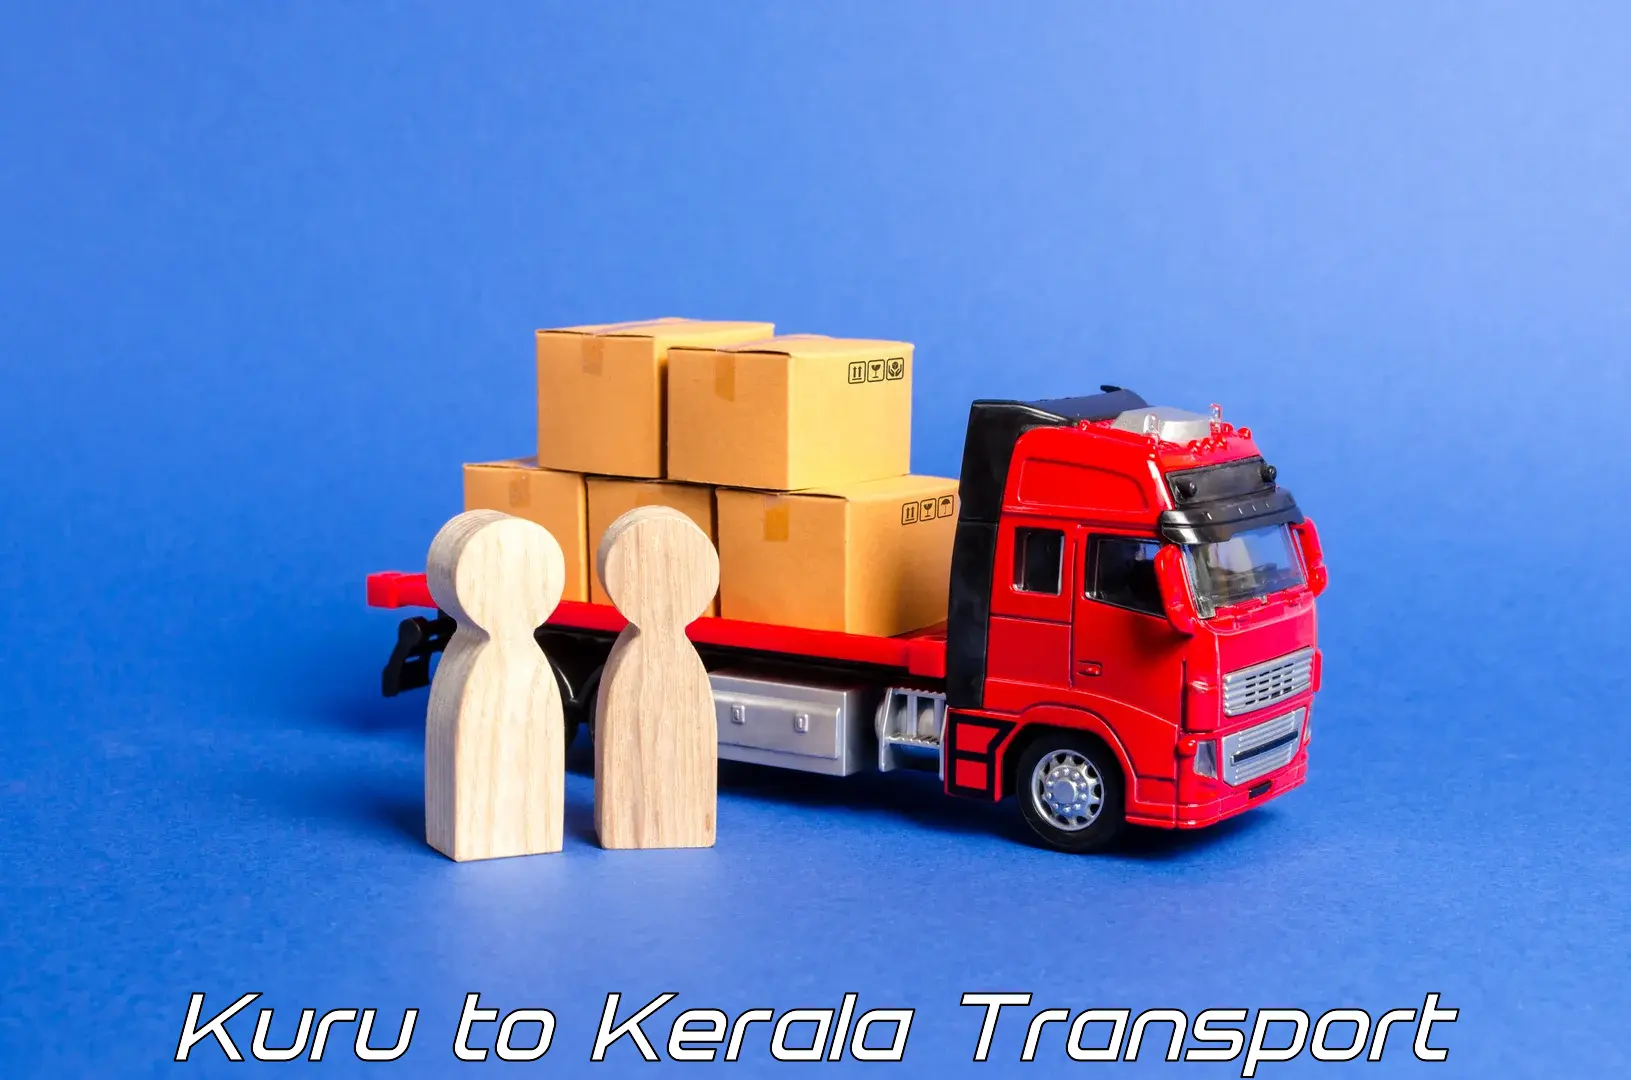 Daily parcel service transport in Kuru to Thrissur